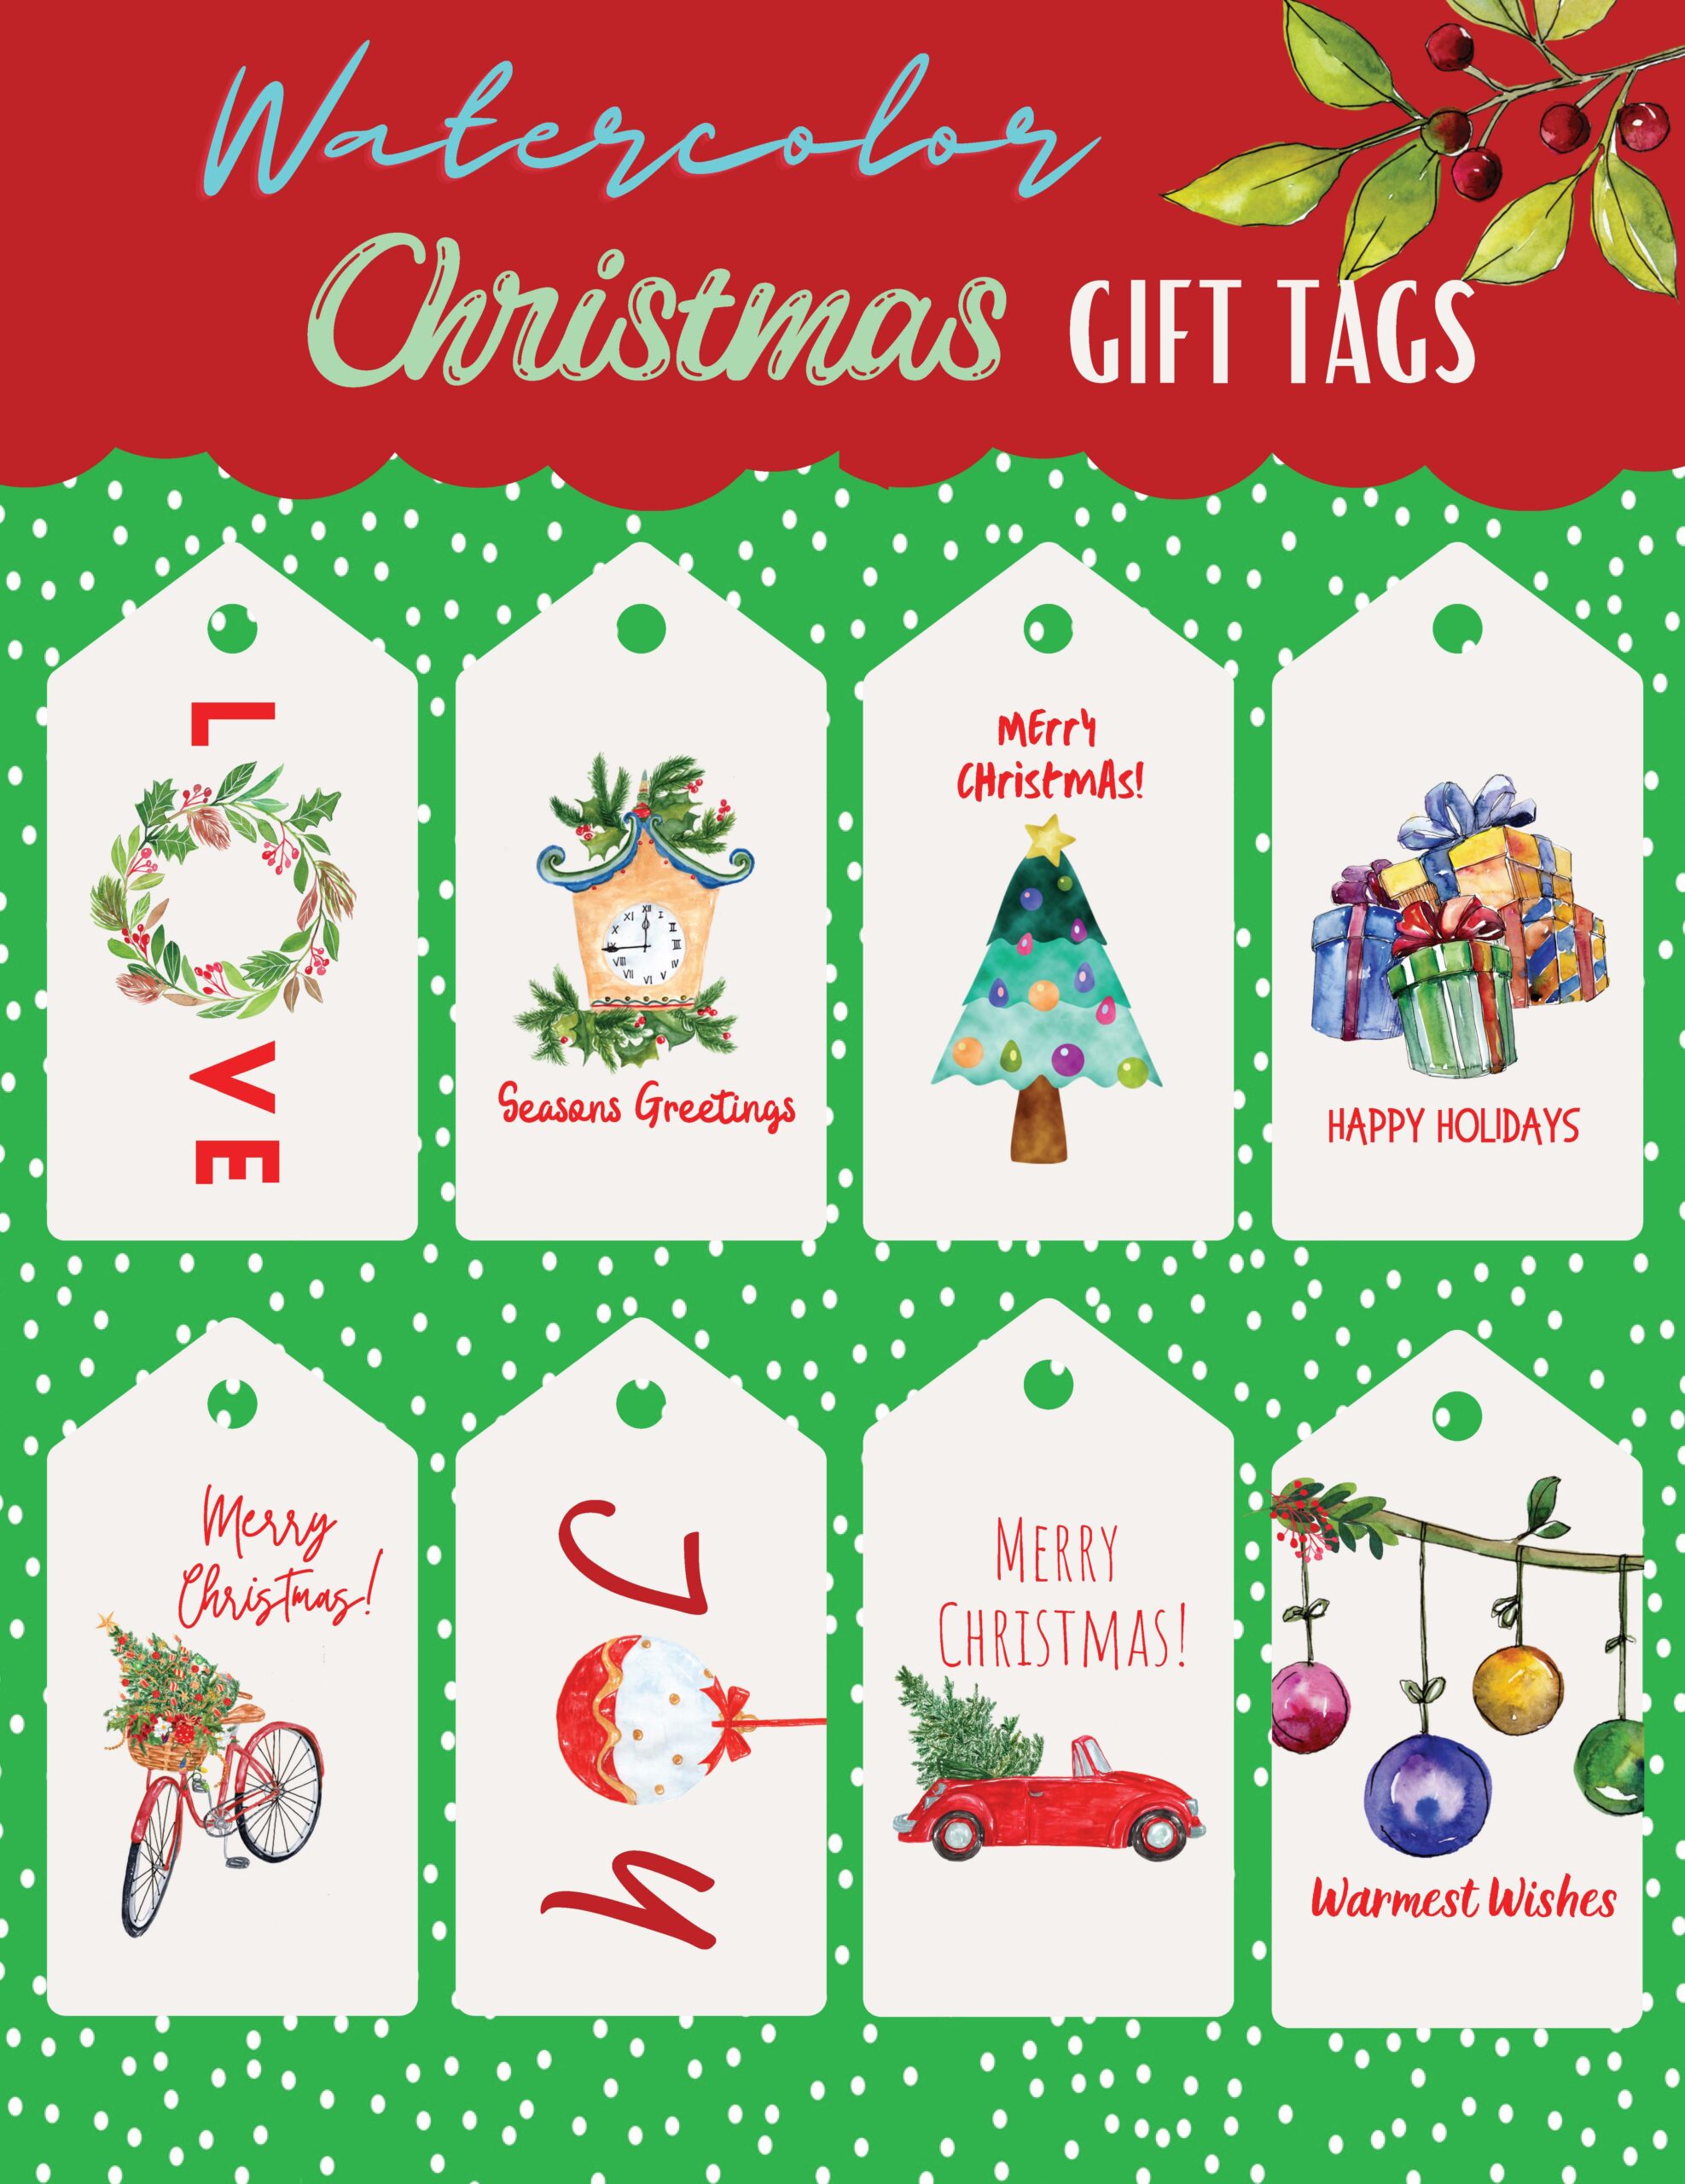 Whimsical & Fun Christmas Tags